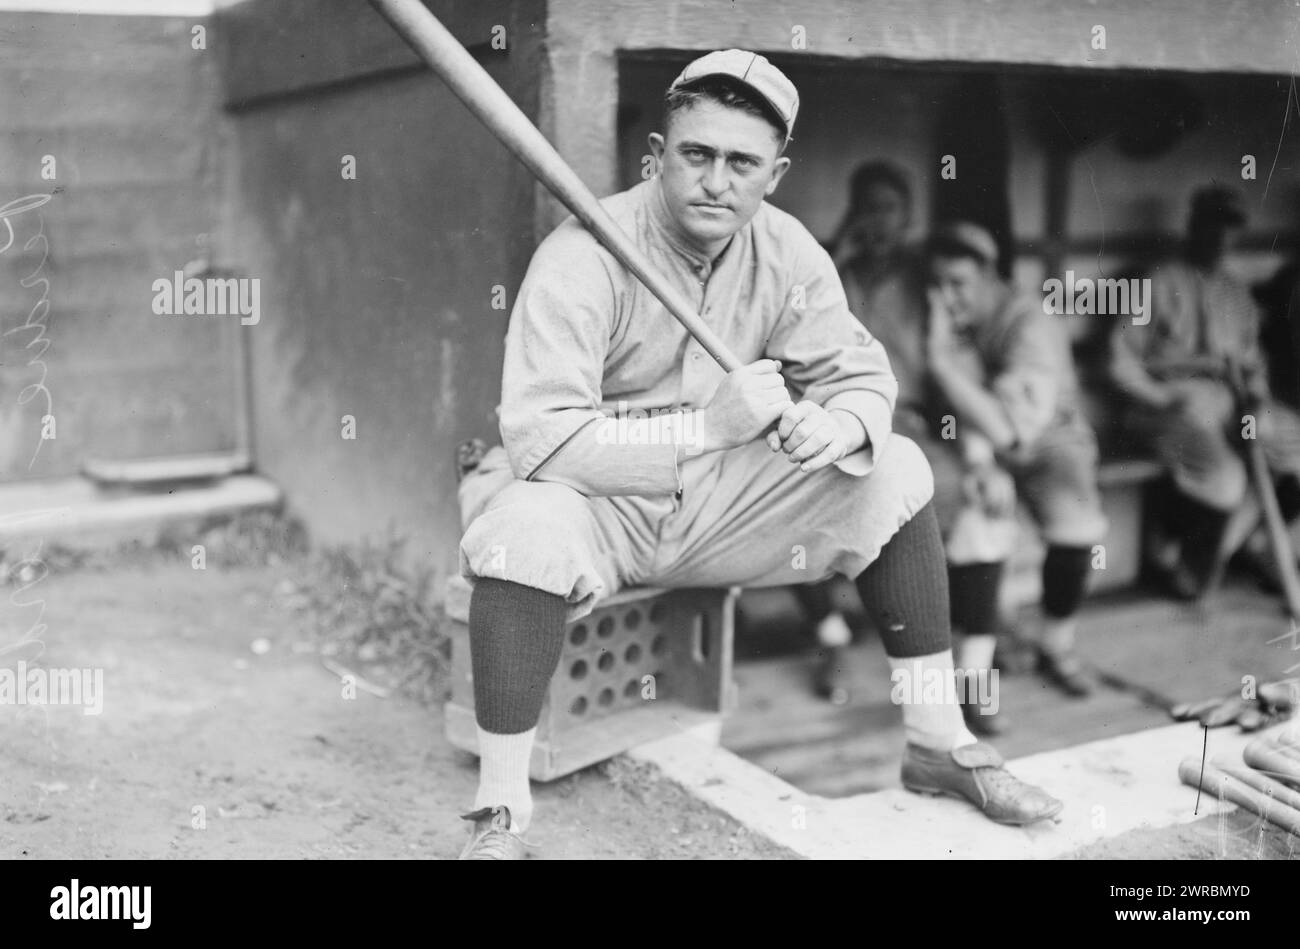 Hub Perdue, St. Louis NL (Baseball), Foto zeigt Baseballspieler Herbert Rodney Perdue (1882–1968), der von 1911 bis 1915 Pitcher in den Major Liagues war, 22. August 1914 (Datum erstellt oder veröffentlicht später von Bain., Glass negative, 1 negative: Glass Stockfoto